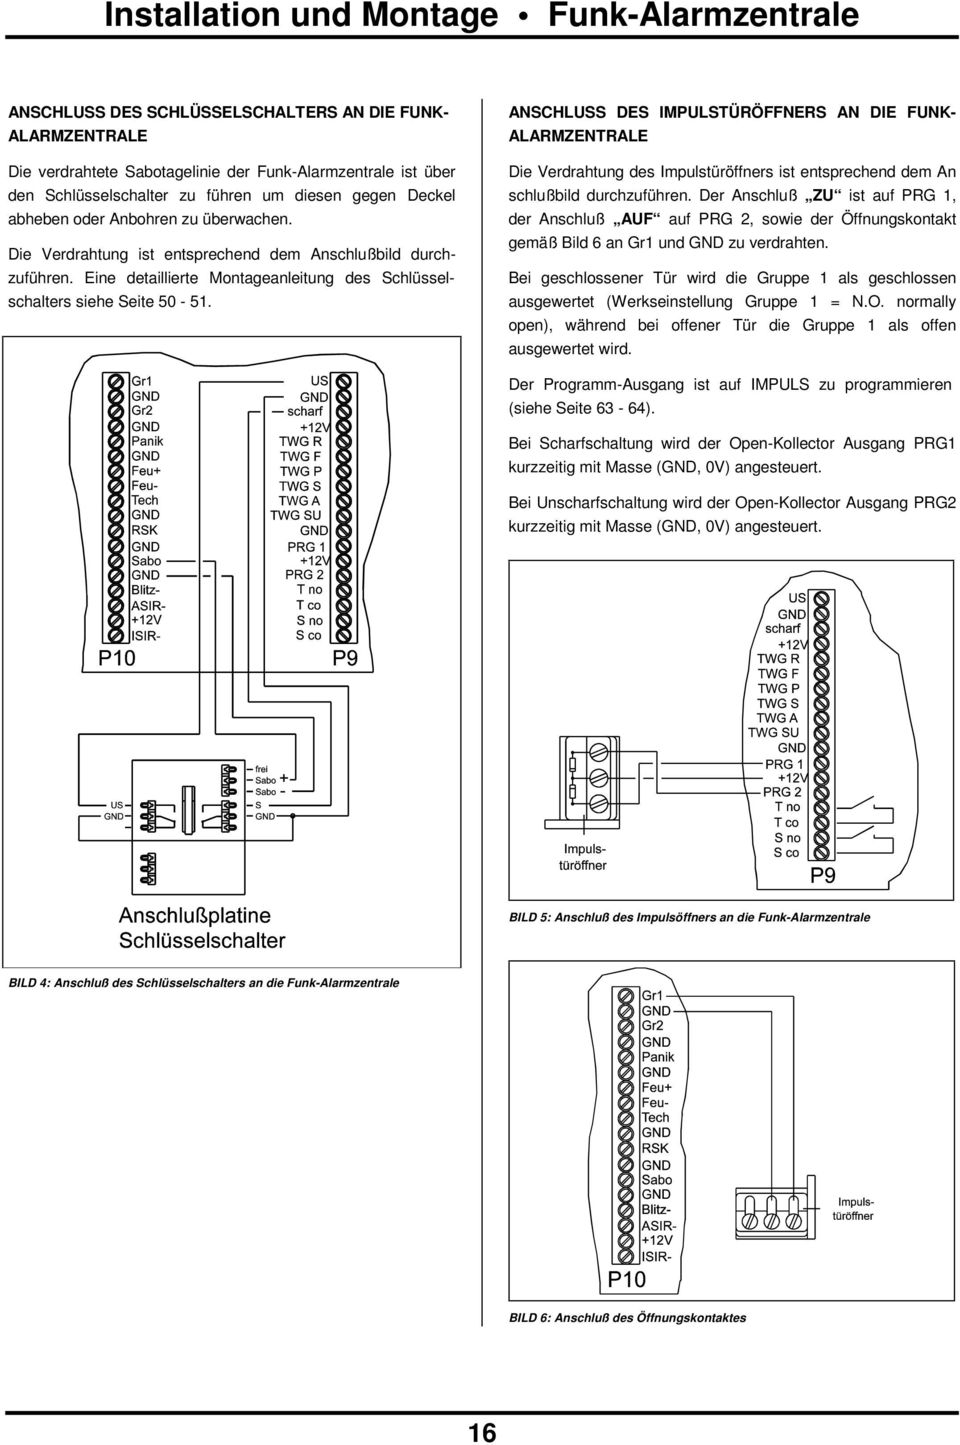 Eine detaillierte Montageanleitung des Schlüsselschalters siehe Seite 50-51.